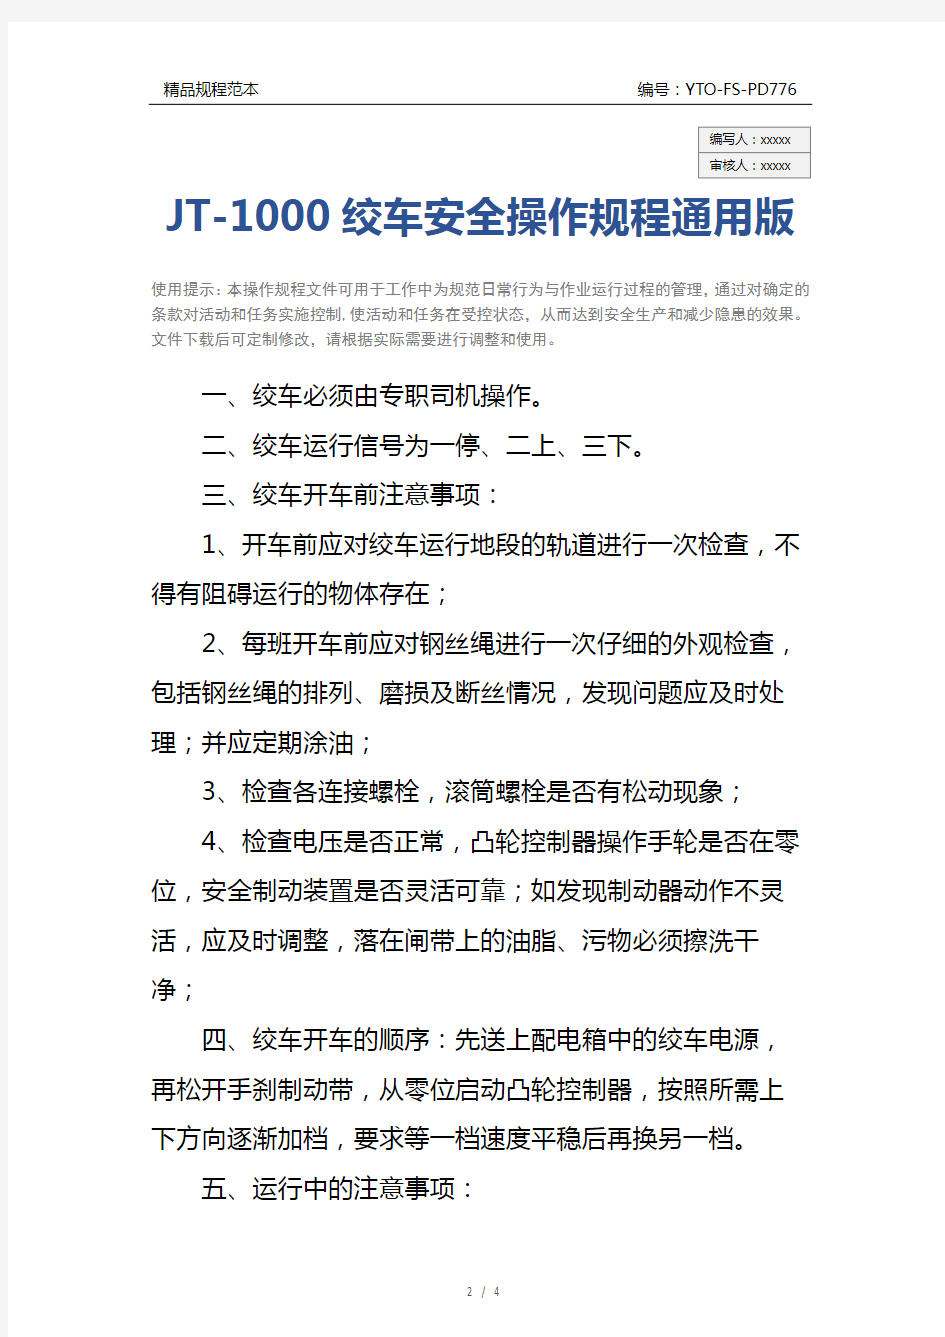 JT-1000绞车安全操作规程通用版